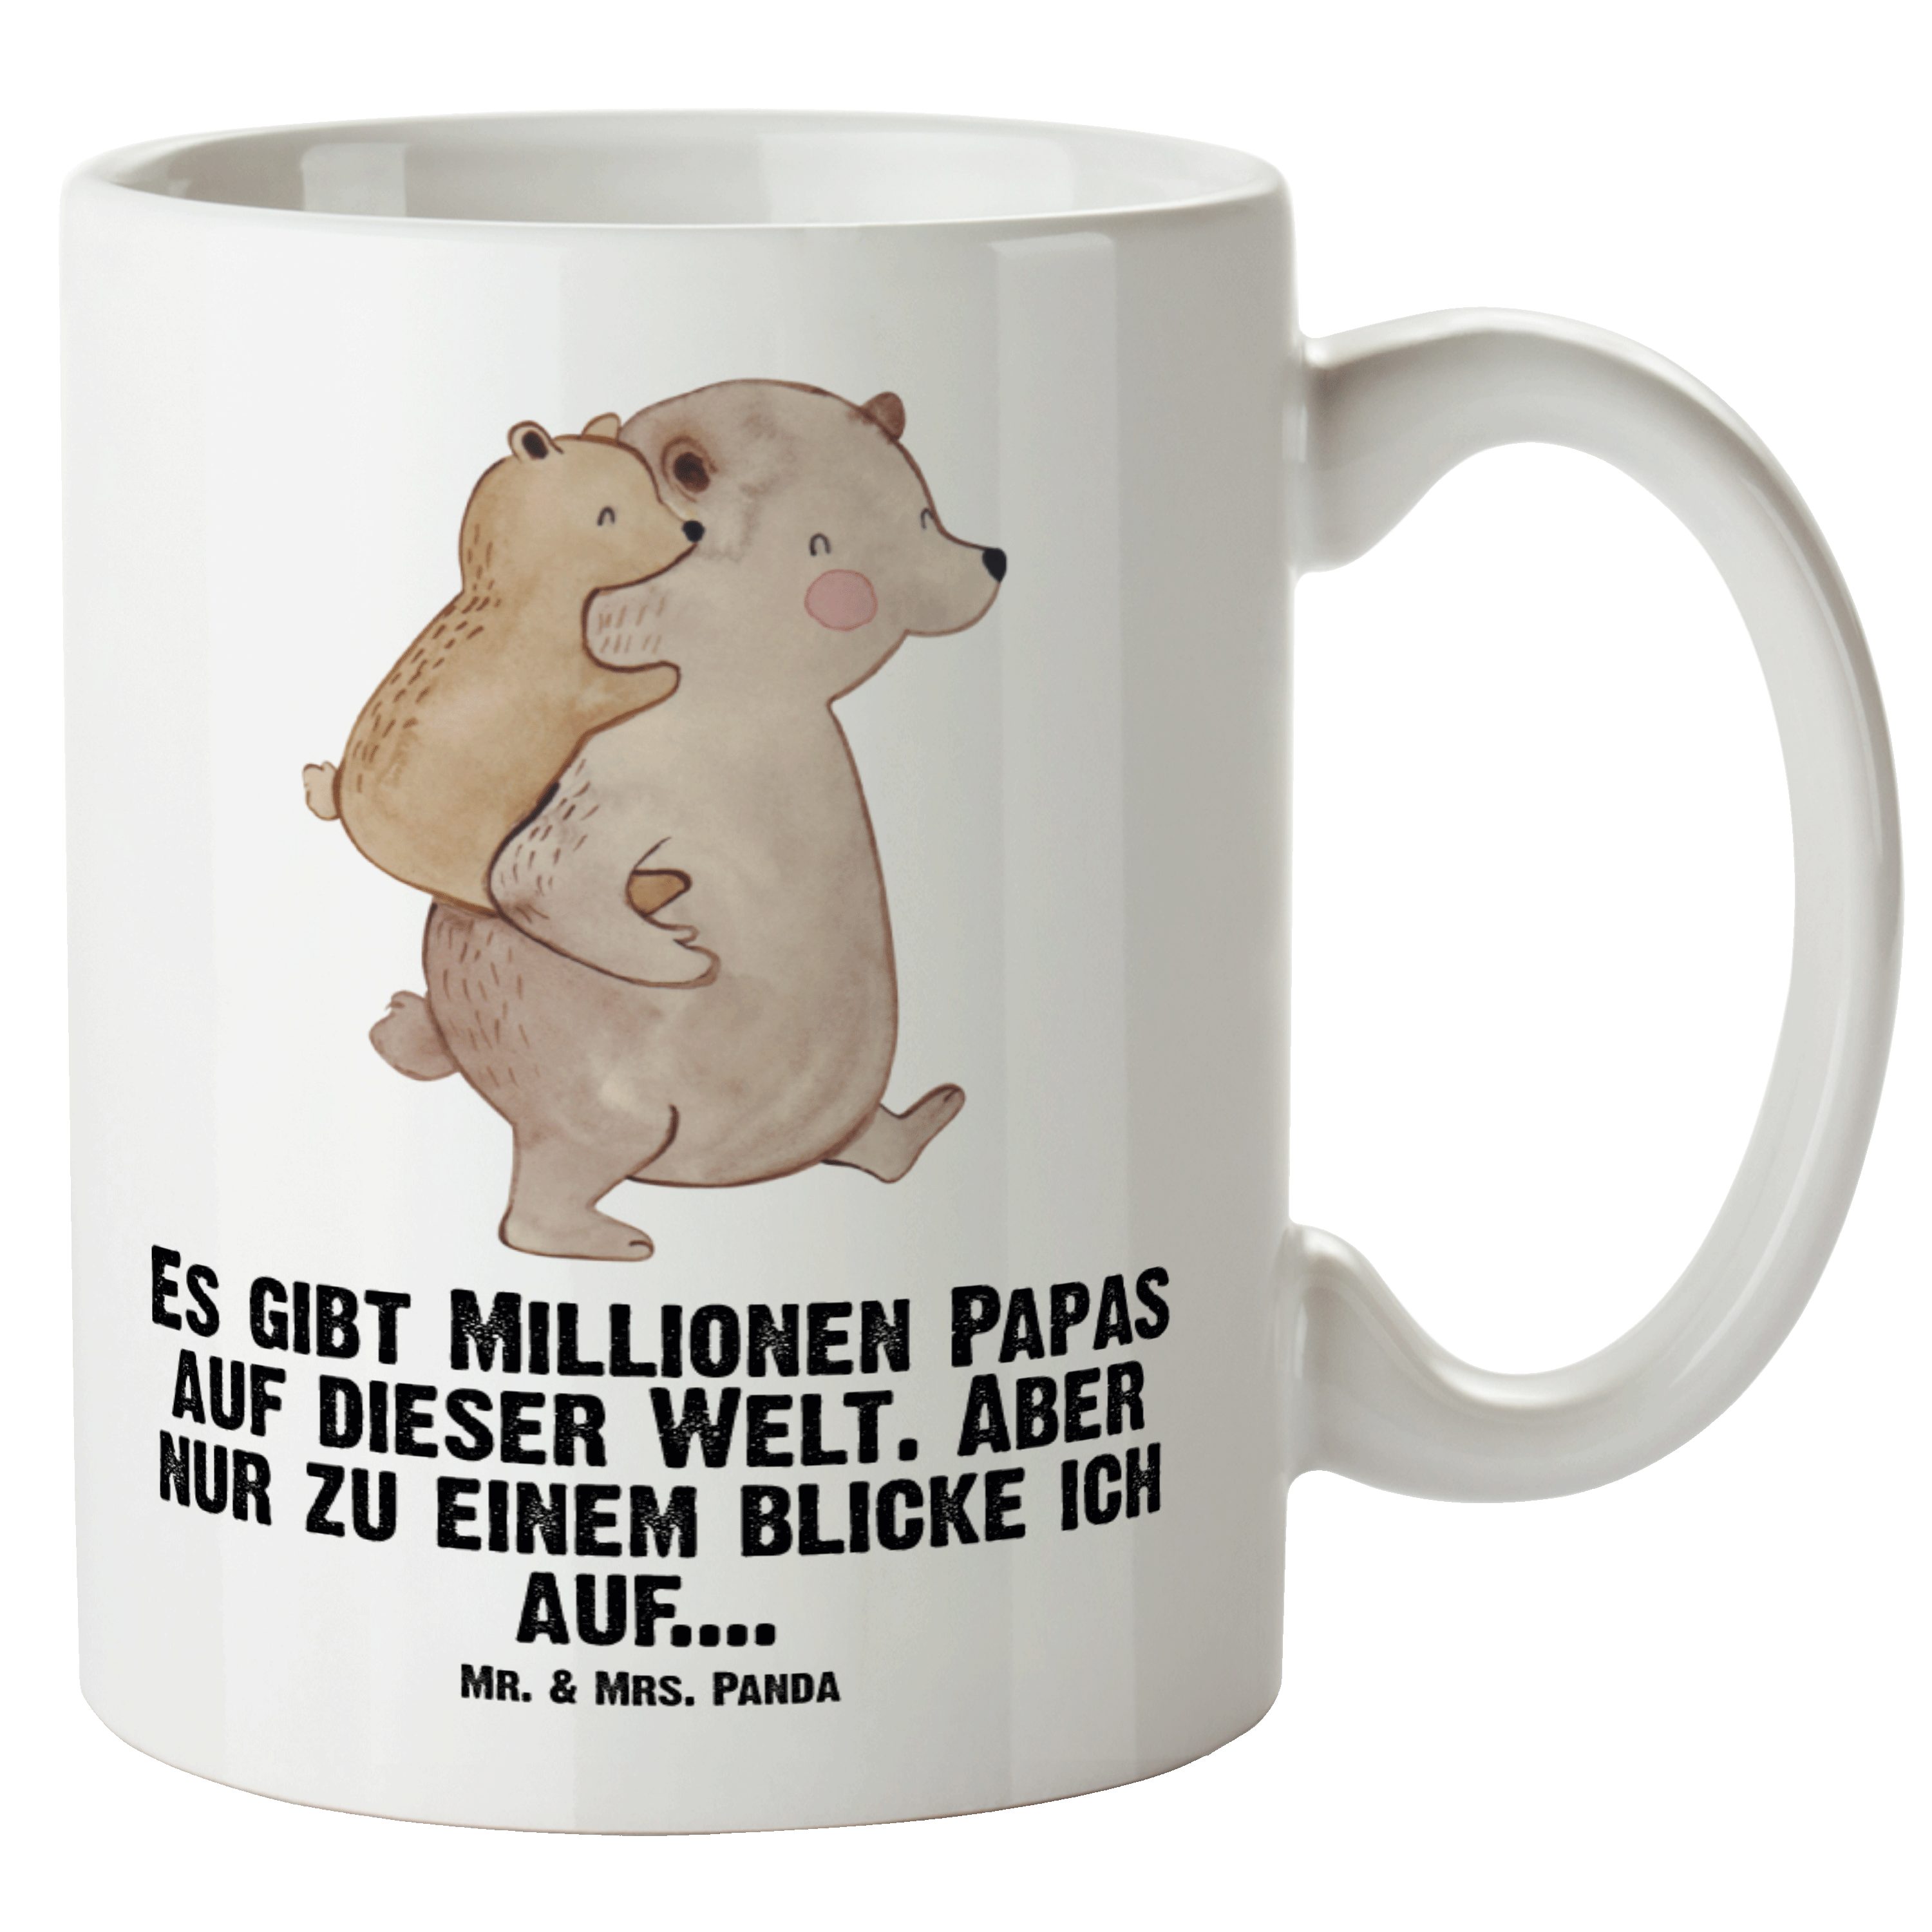 Mr. & Mrs. Panda Tasse Papa Bär - Weiß - Geschenk, Muttertag, Große Tasse, Schwester, Grosse, XL Tasse Keramik